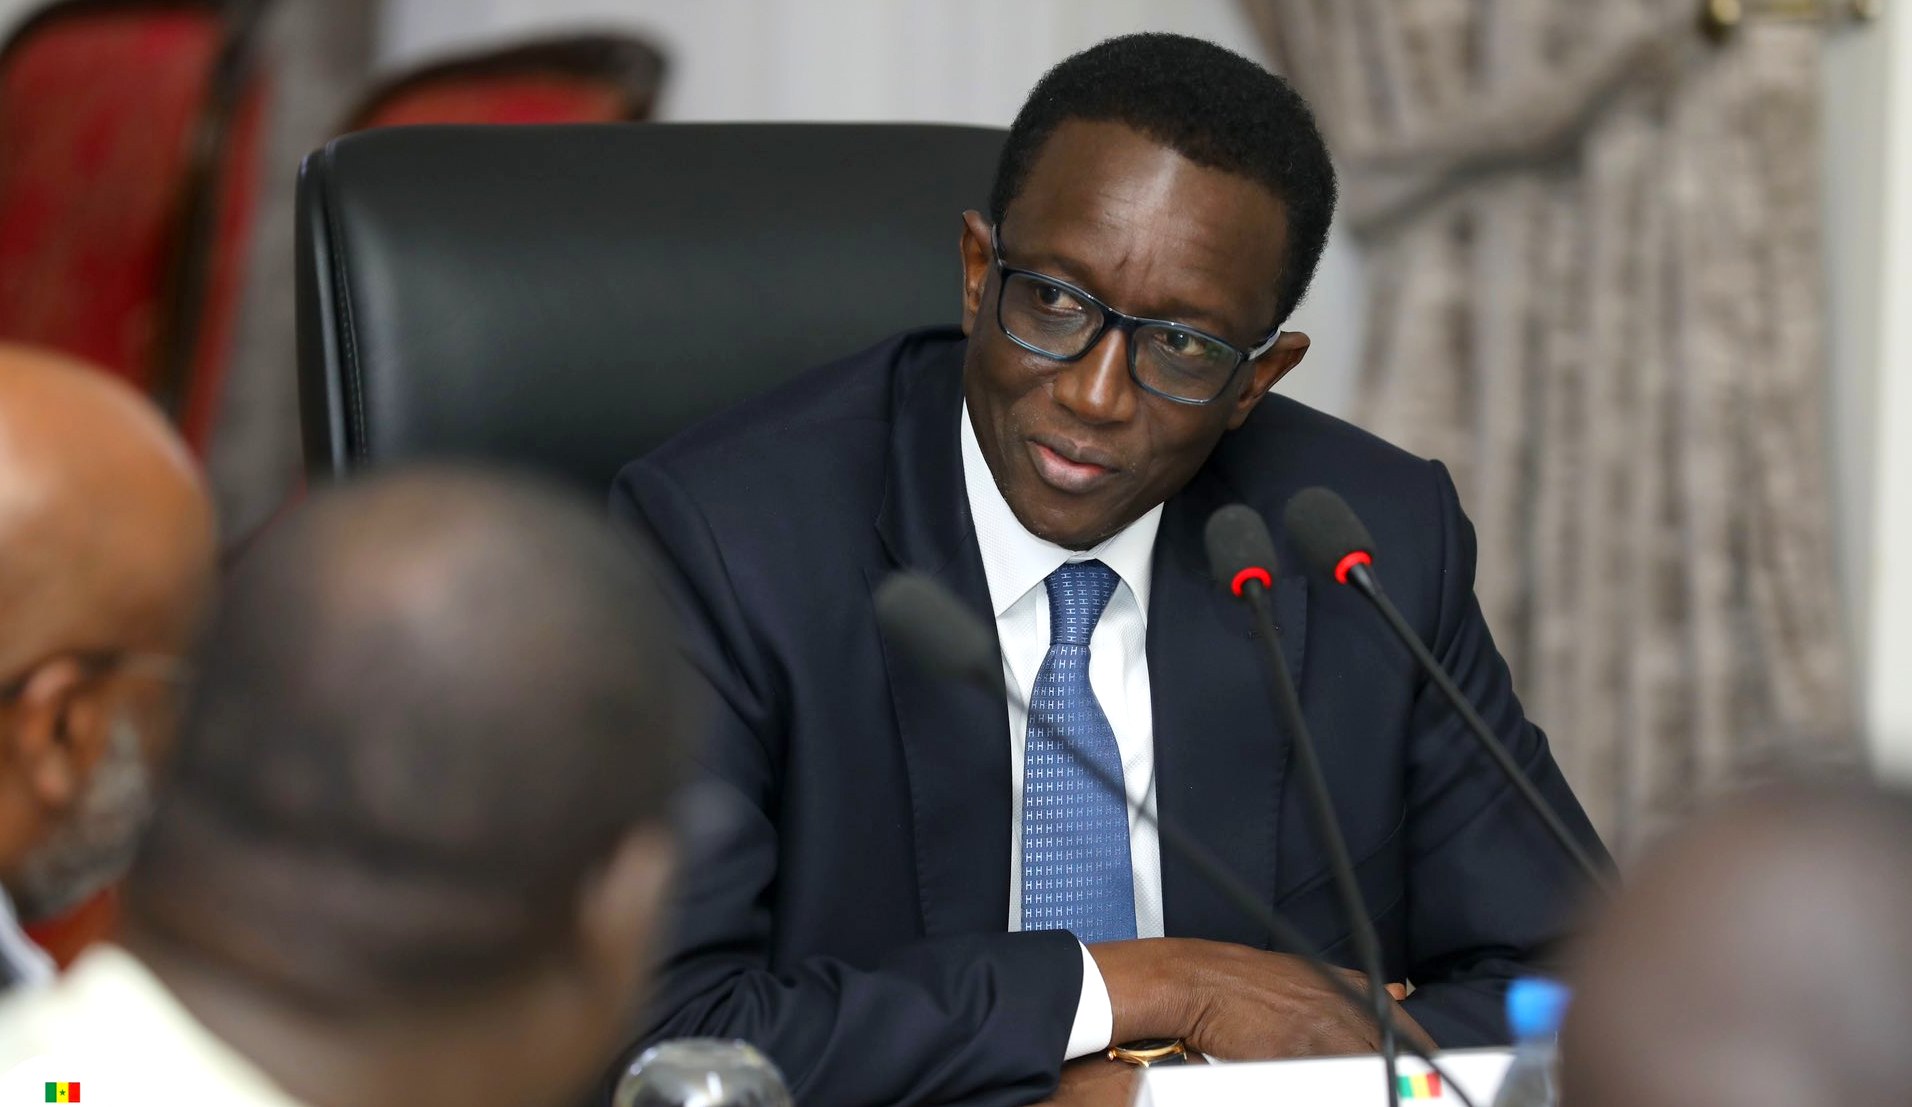 Amadou Ba - Premier Ministre du Sénégal